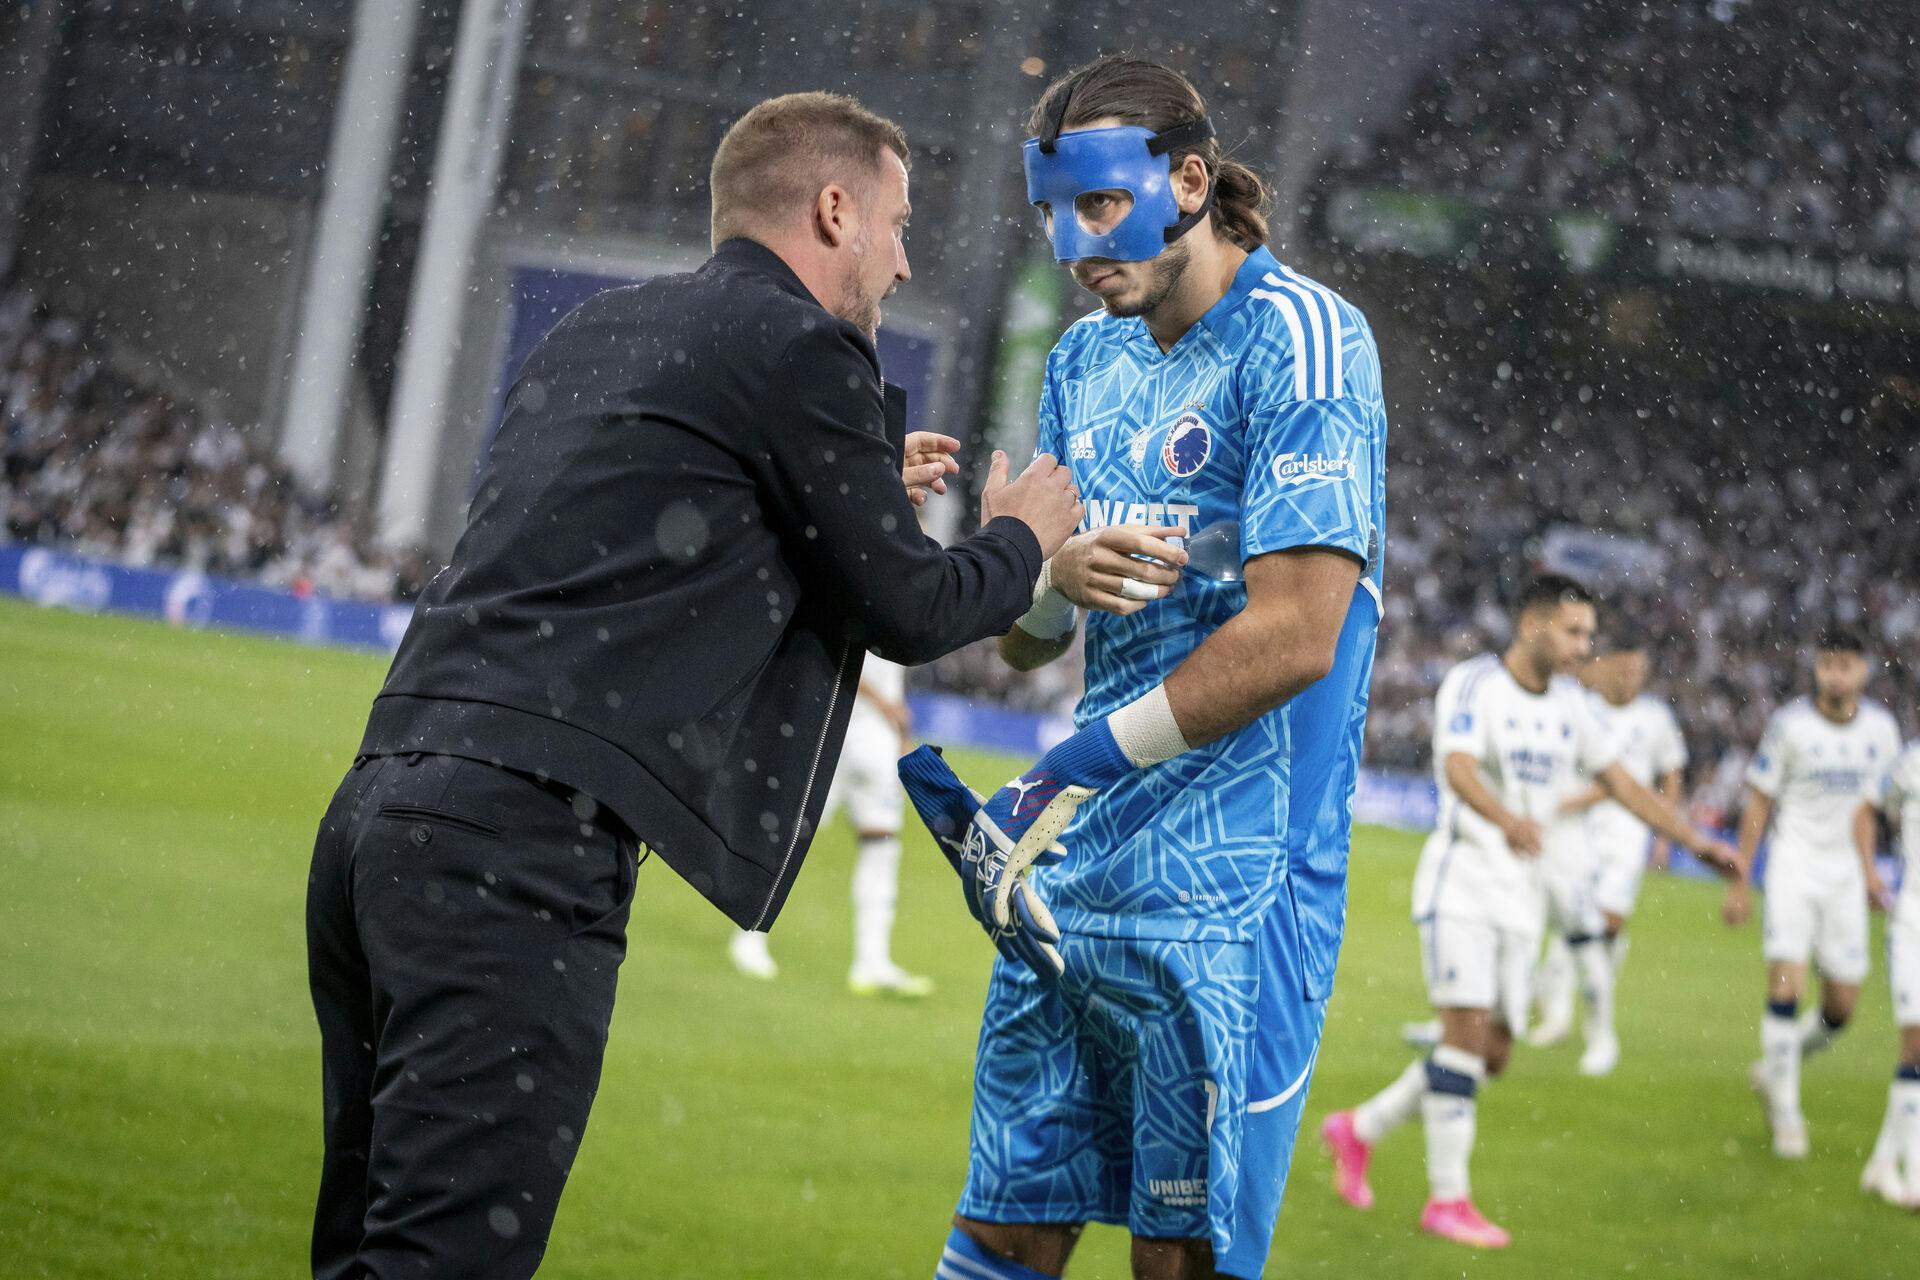 FC København-målmanden kom hjem med en sejr – måske også med en pølse.